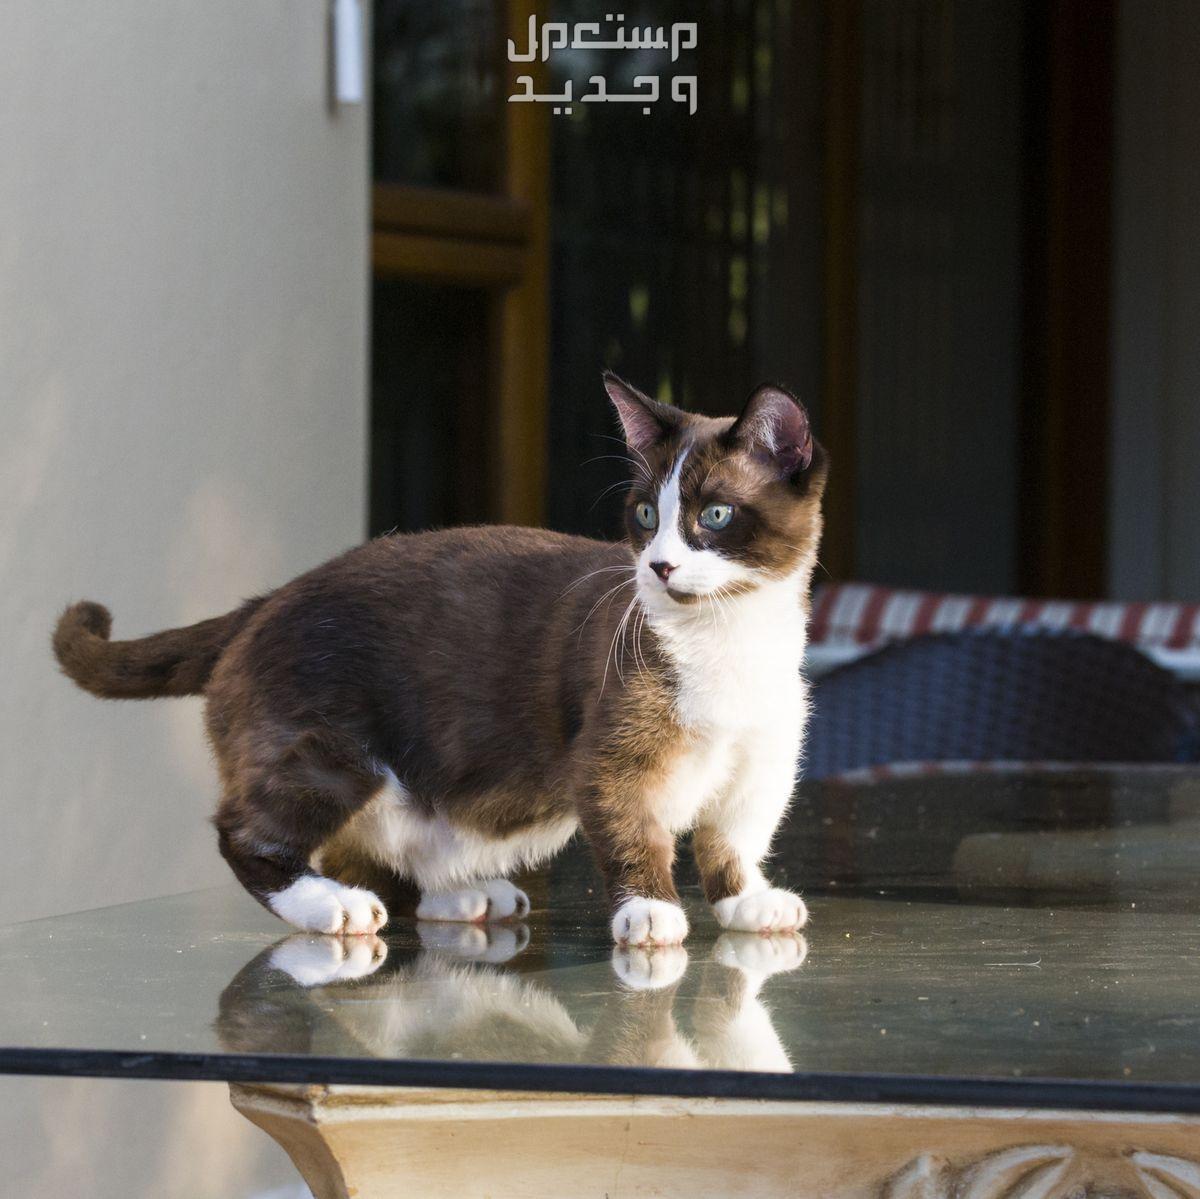 قطط لا تكبر أبدًا - تعرف عليها في قطر قطة حجمها صغير